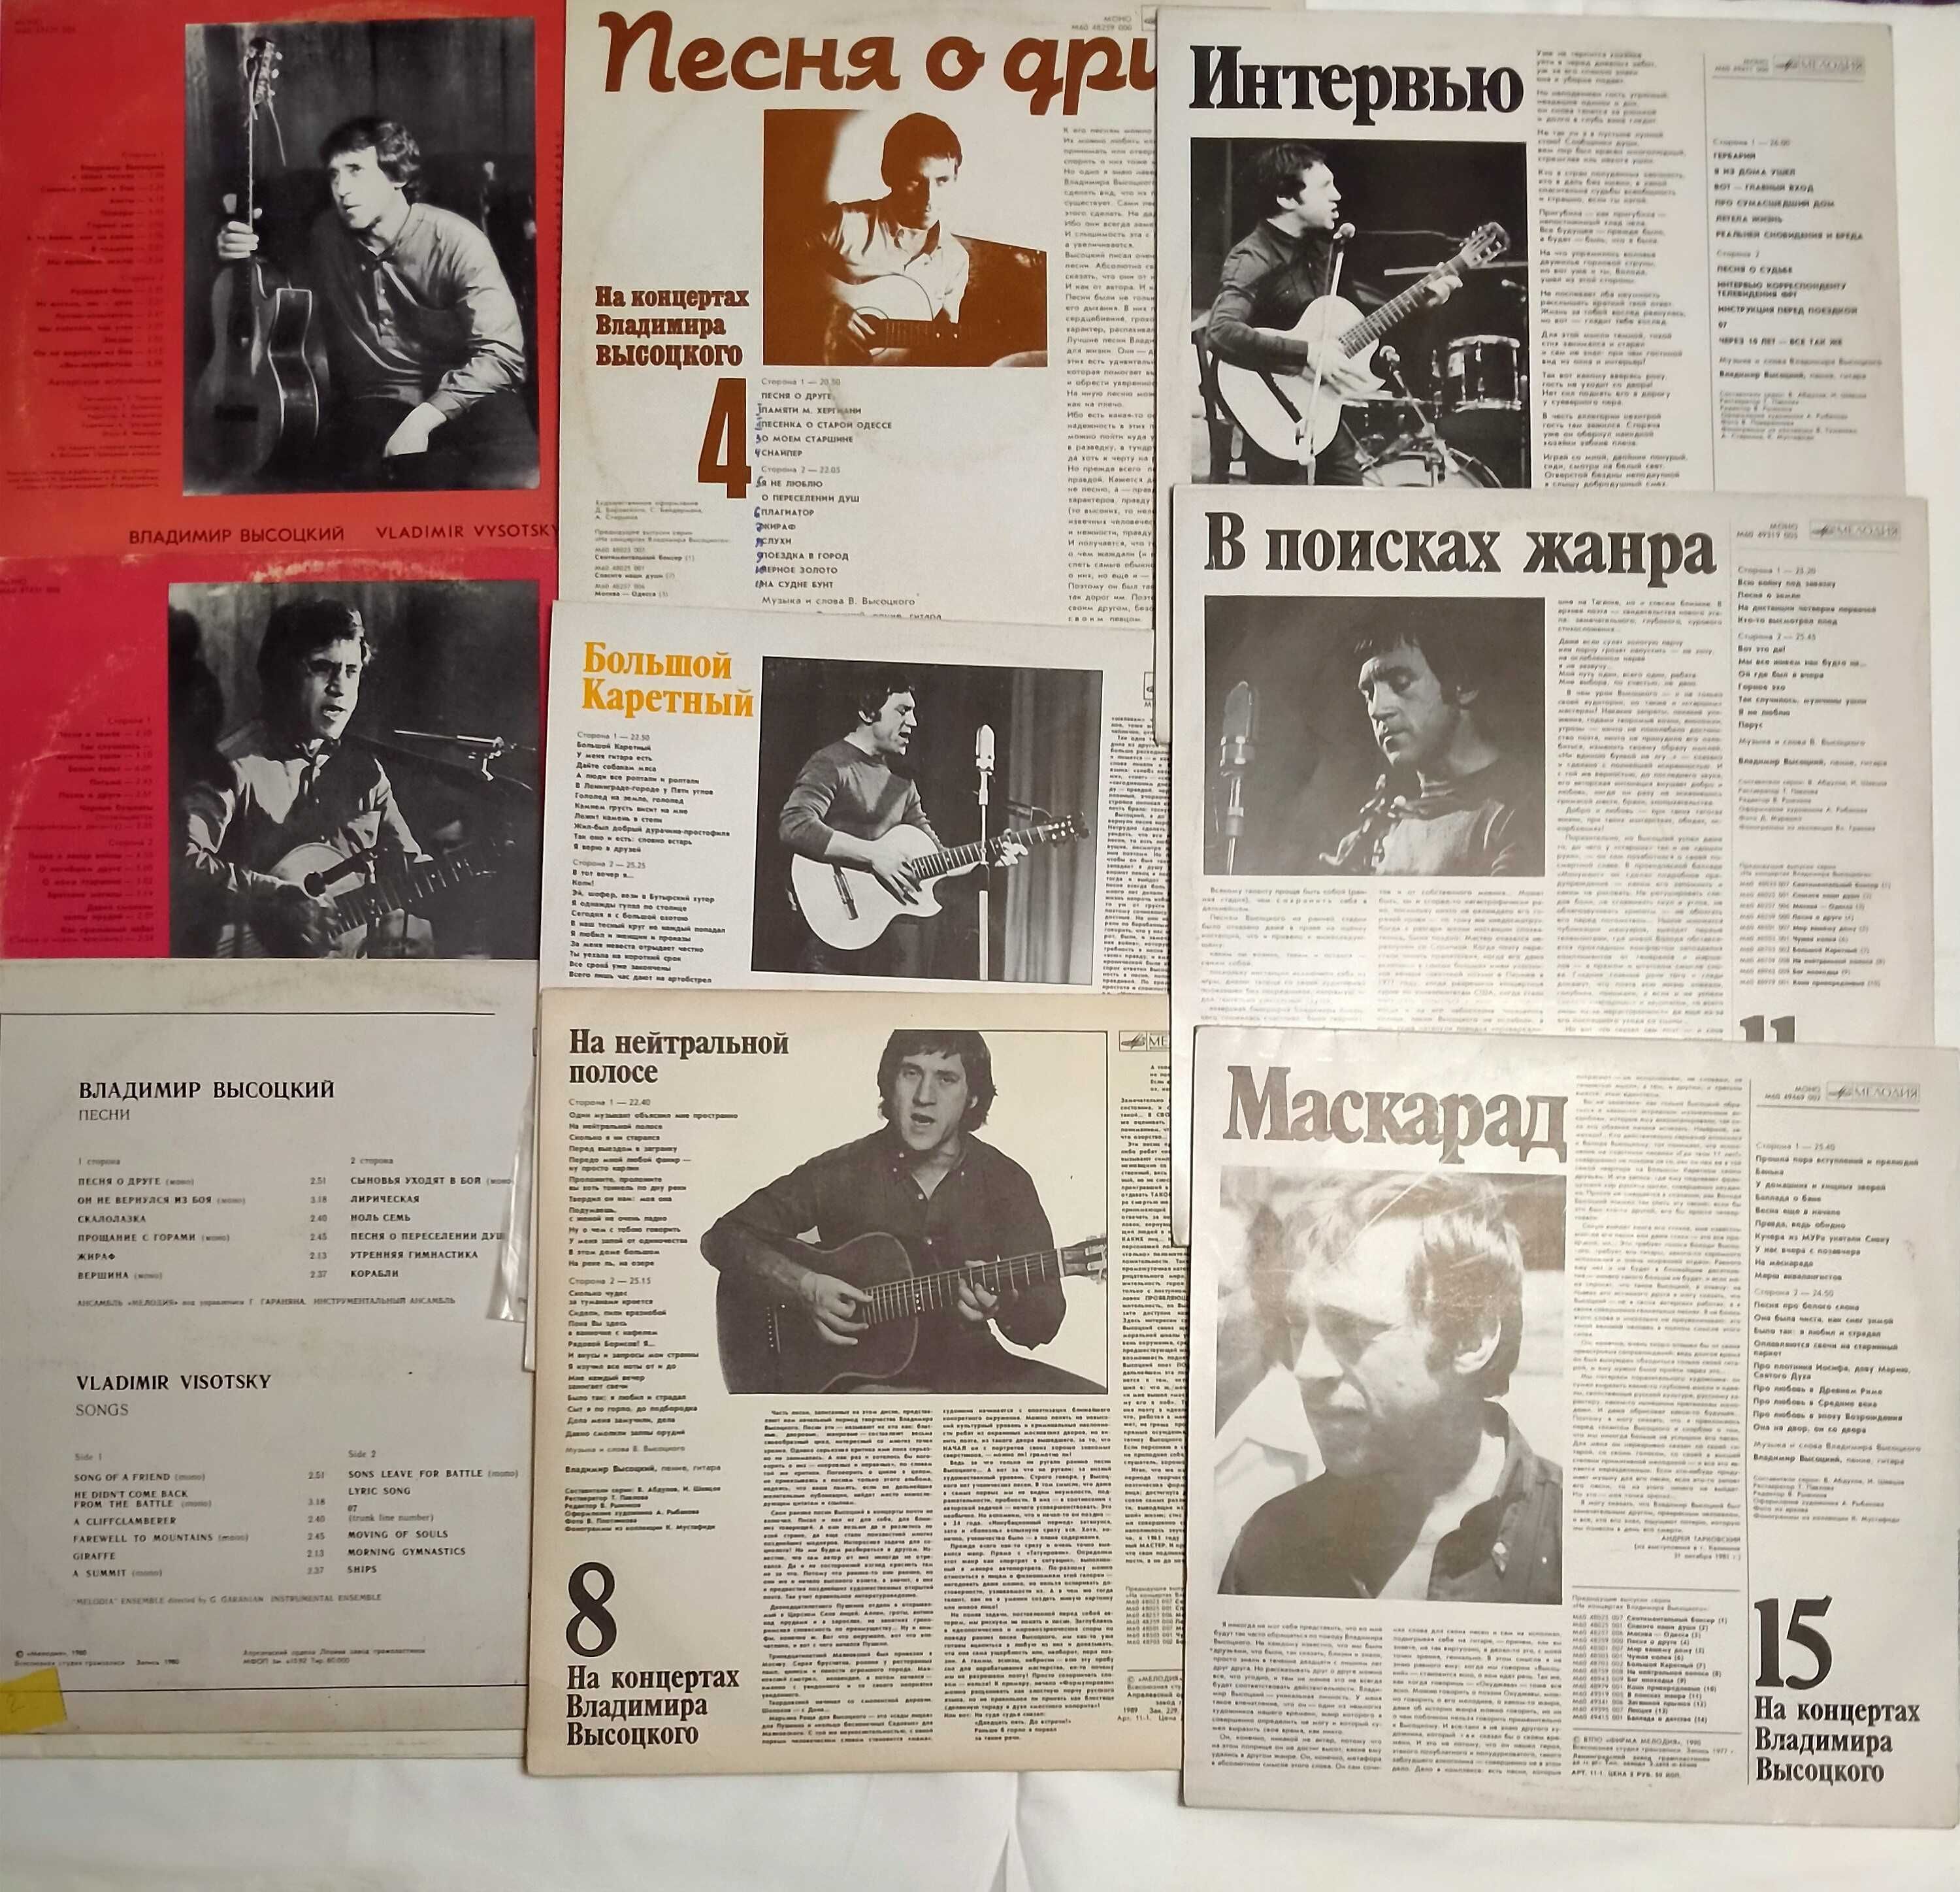 Коллекция виниловых пластинок Владимира Высоцкого.